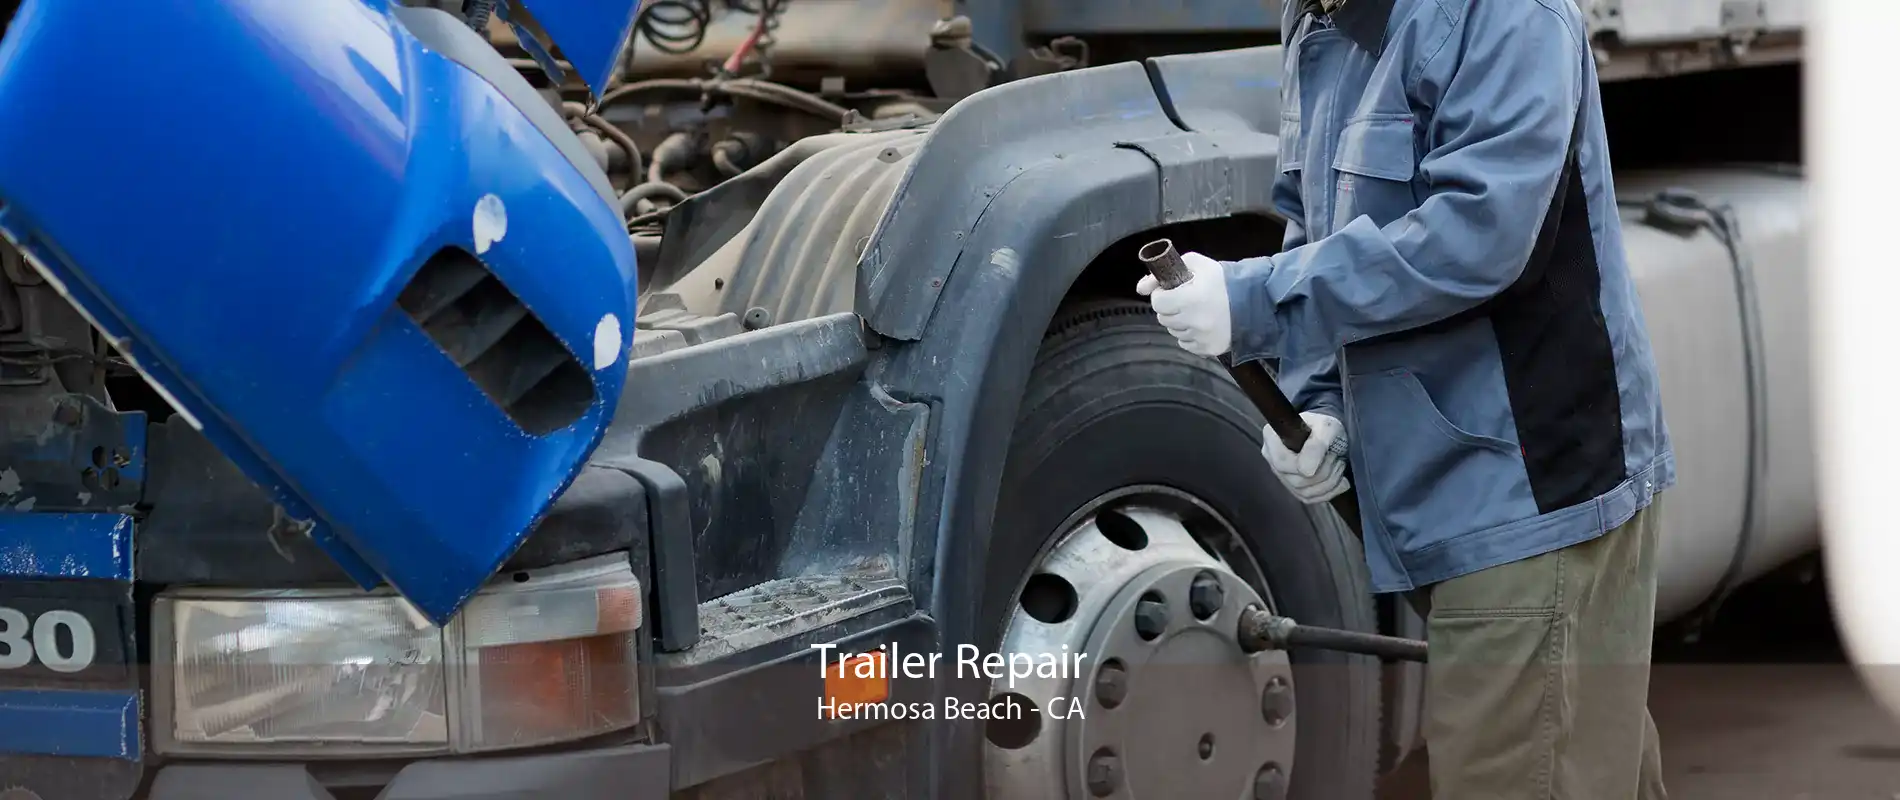 Trailer Repair Hermosa Beach - CA